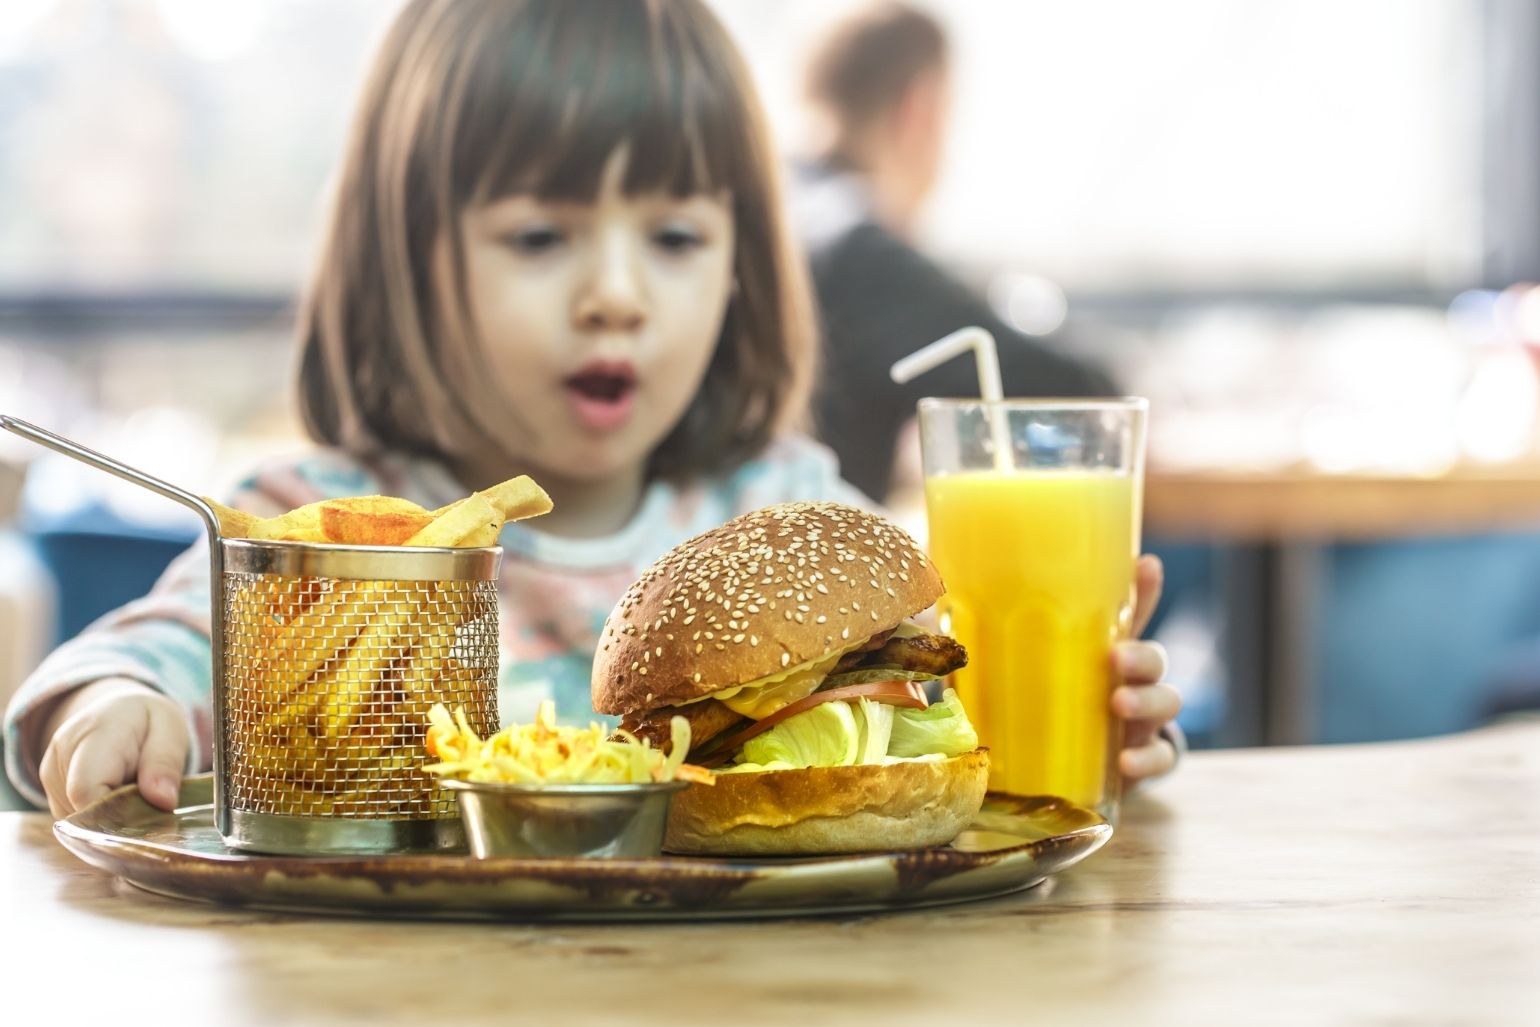 Ce pățesc copiii care mânâncă fast food?